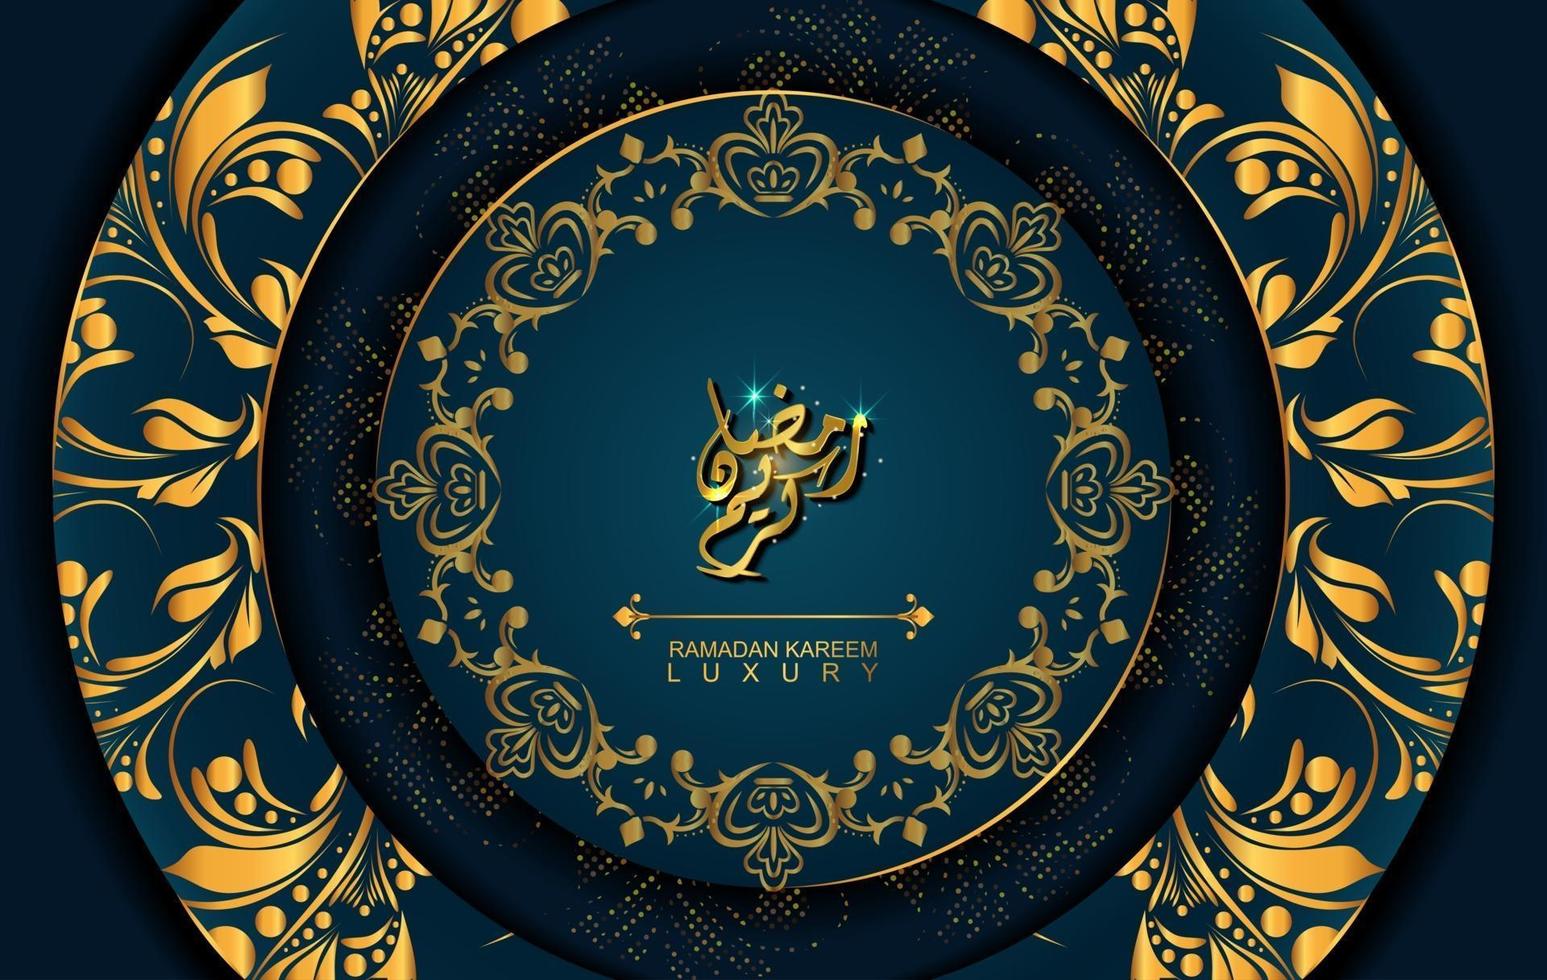 Ramadan Kareem in luxury style with Arabic calligraphy. Luxury golden mandala on dark blue background for Ramadan Mubarak vector